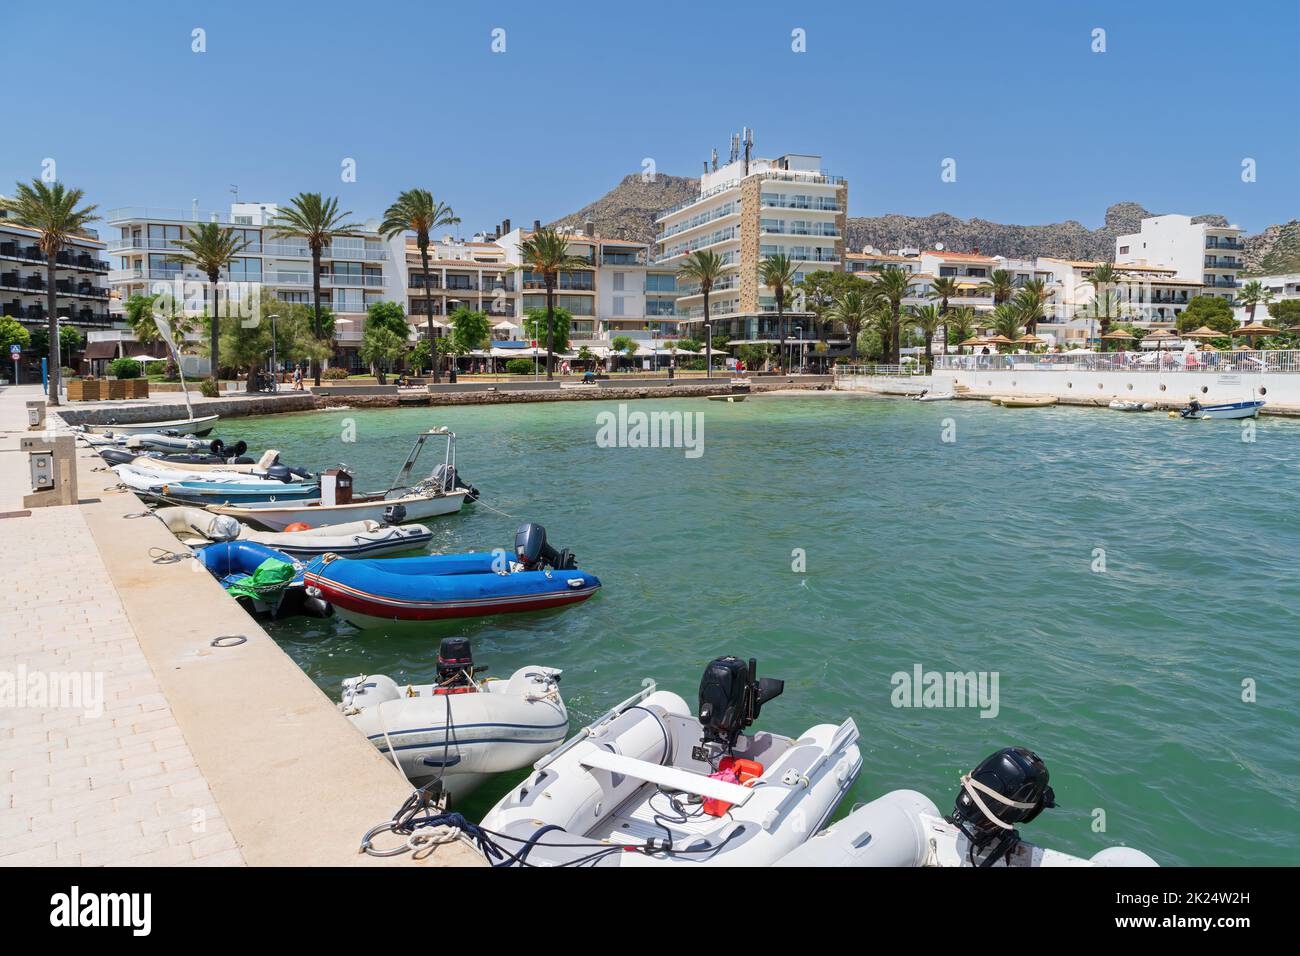 Puerto de Pollensa on the island of Mallorca Stock Photo